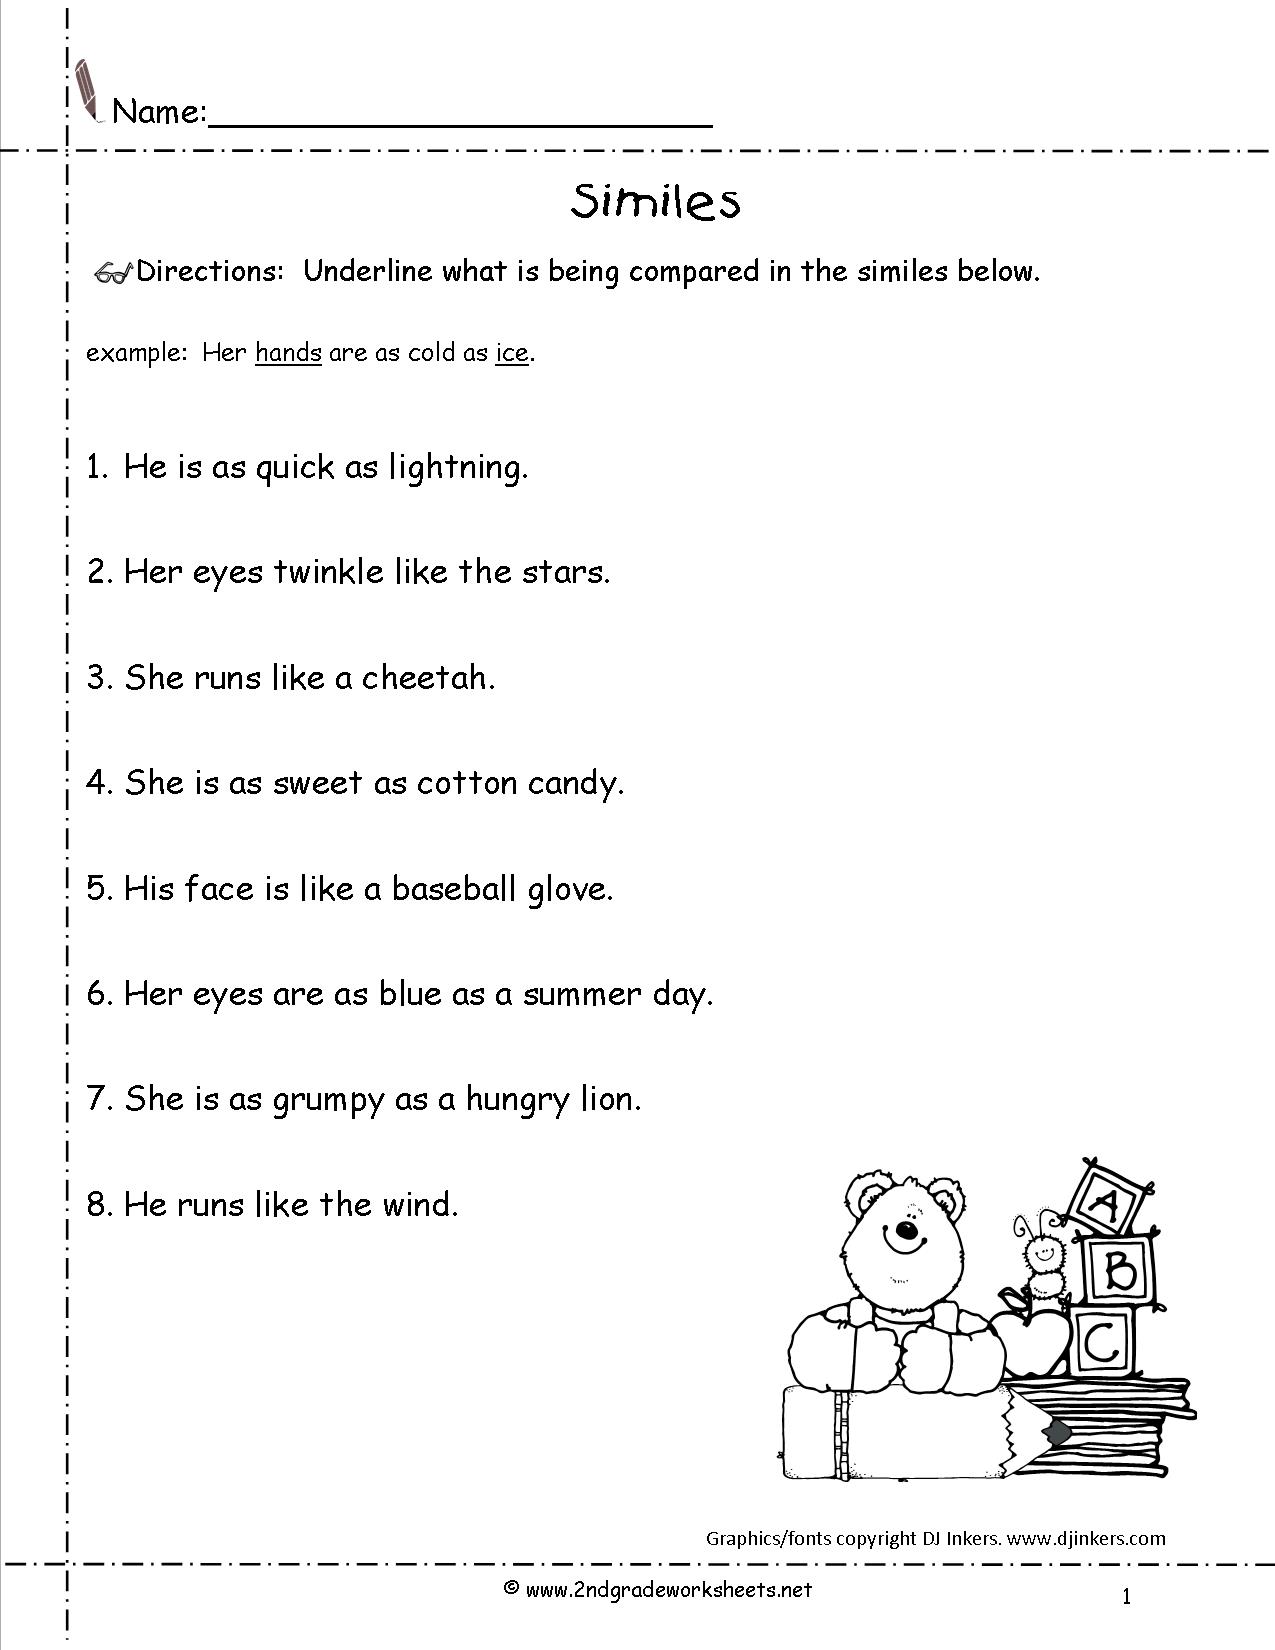 13-simile-worksheets-for-teachers-worksheeto